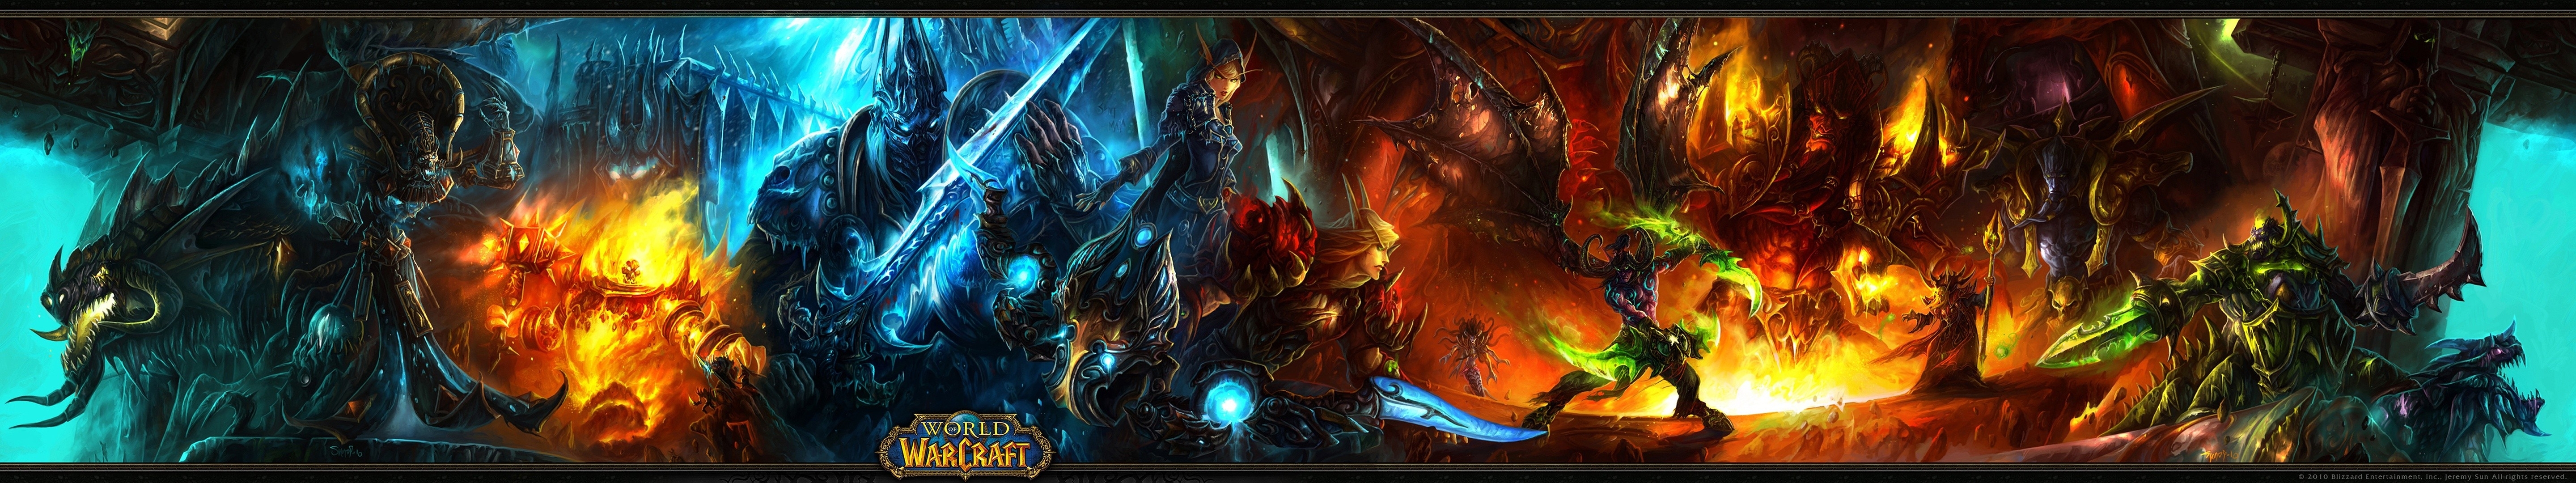 World Of Warcraft Multiscreen Wallpaper